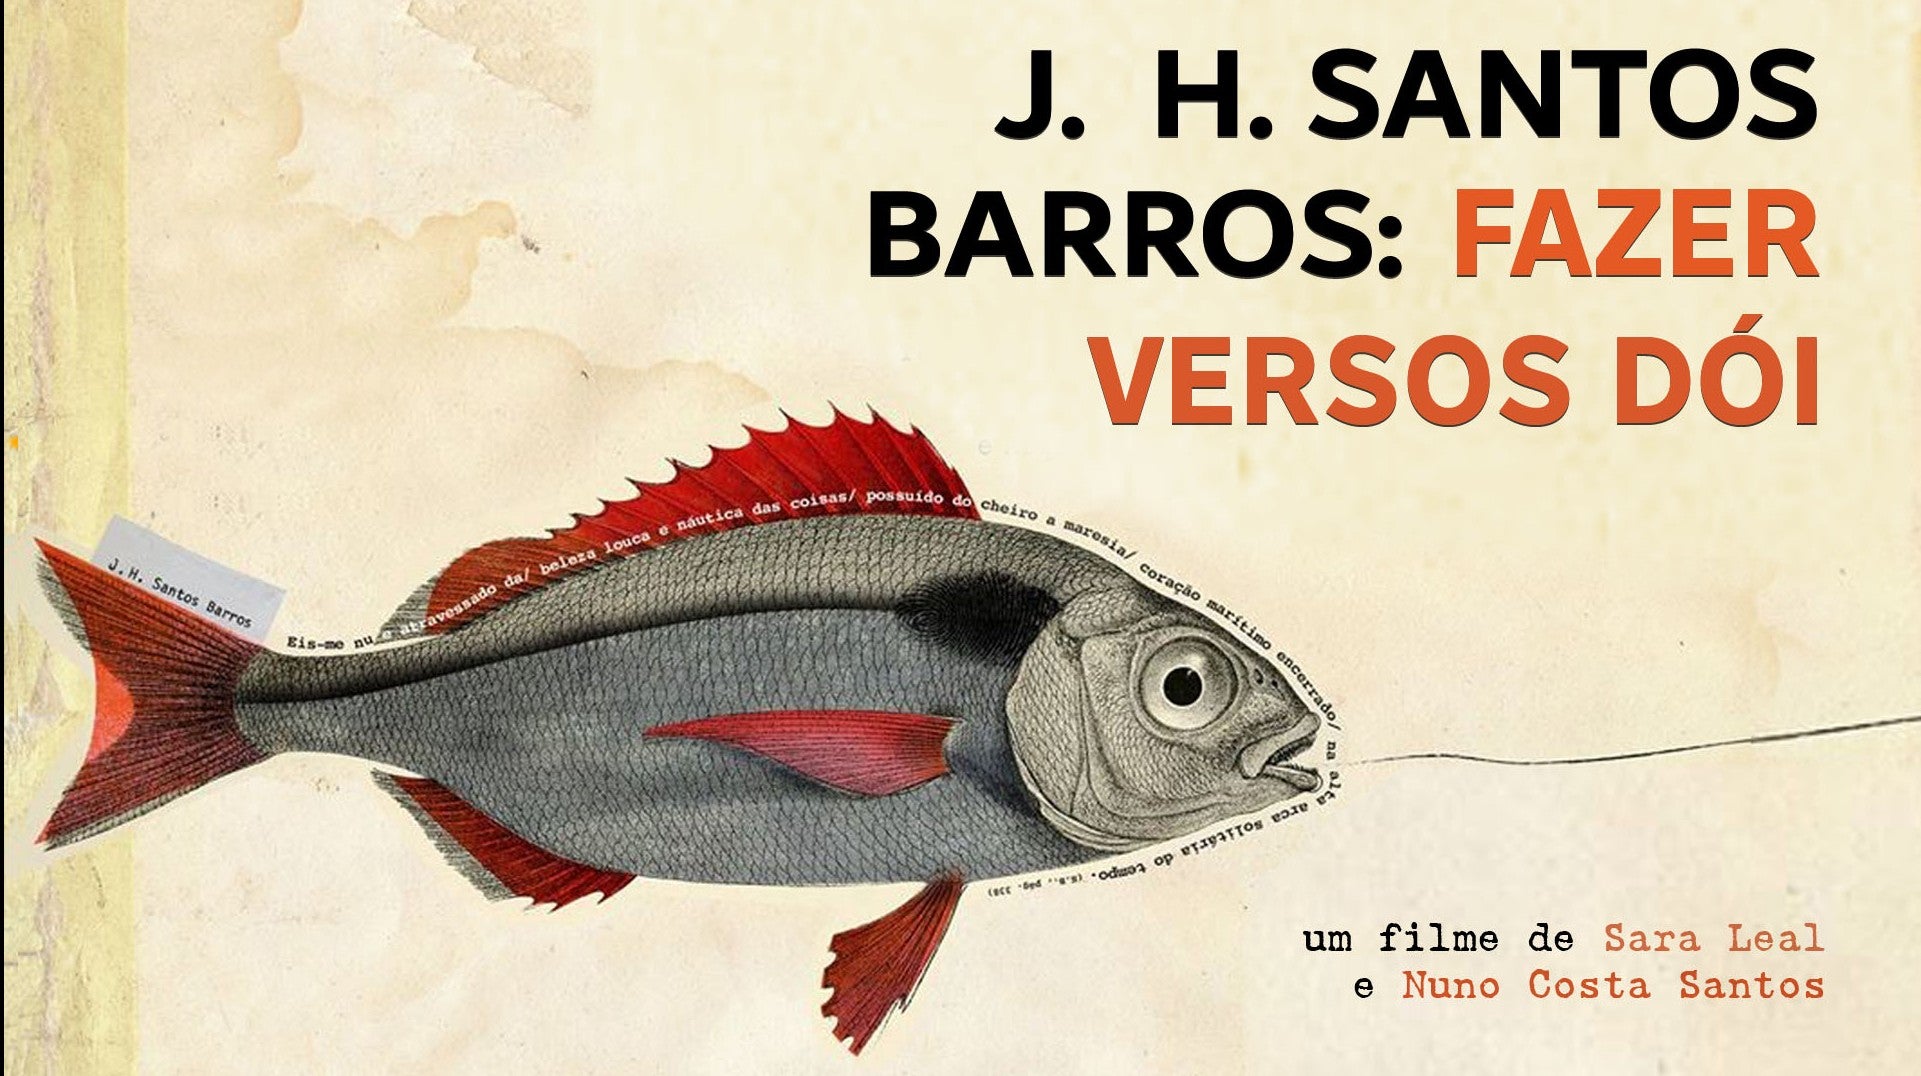 J.H. Santos Barros: Fazer Versos Doi